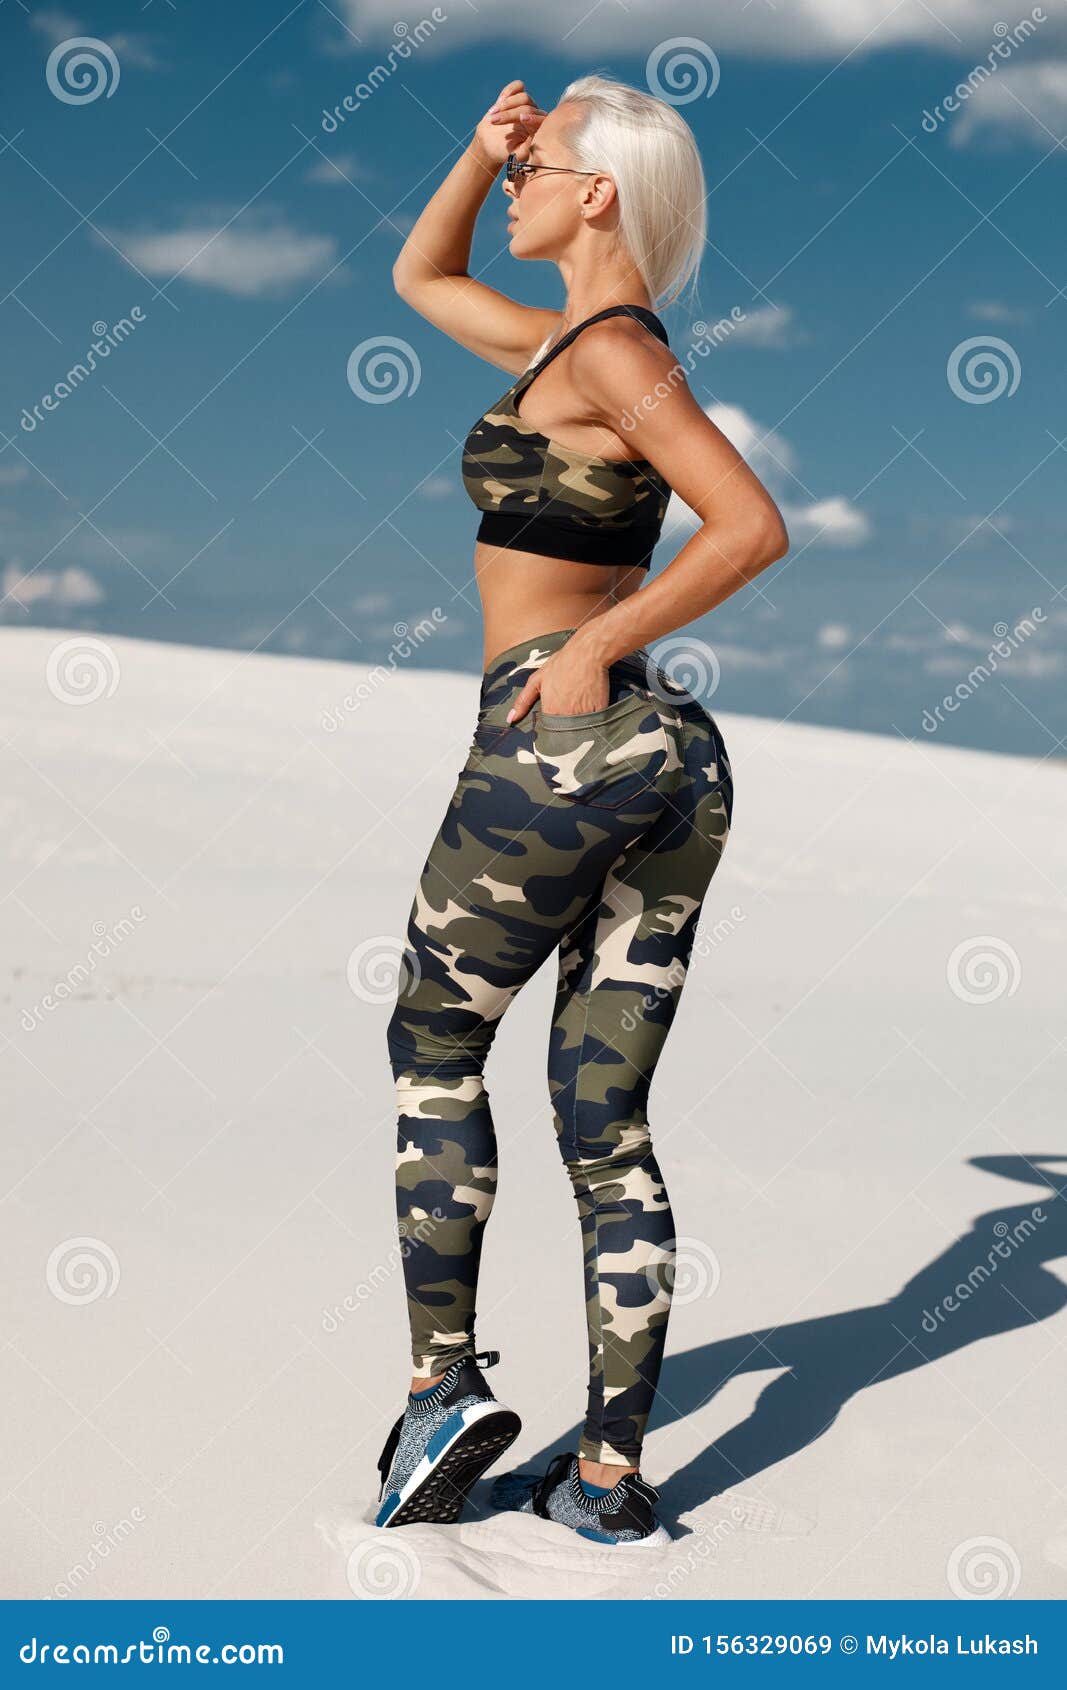 Beautiful Athletic Girl in Sportswear, Fitness Woman in Leggings